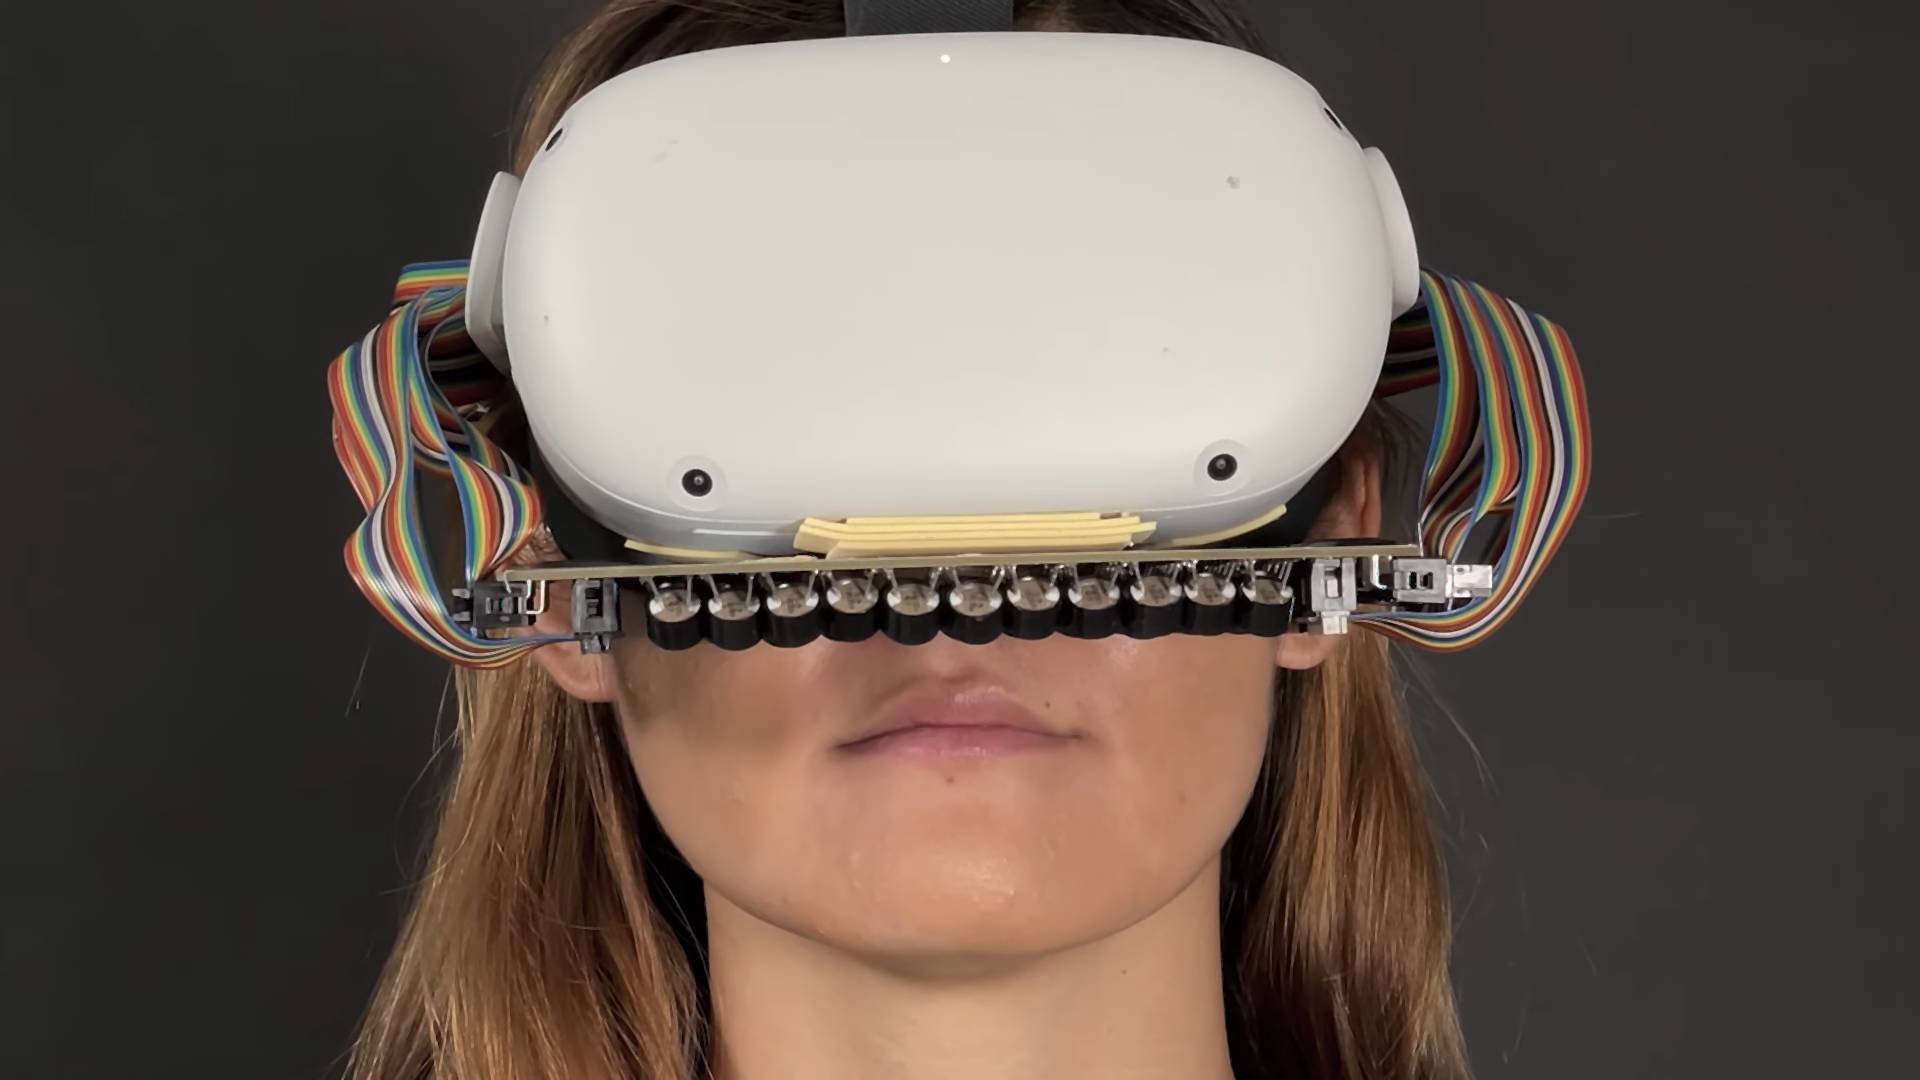 Fejlesztők megalkották a VR szemüveget, amely képes szimulálni a csókolózást